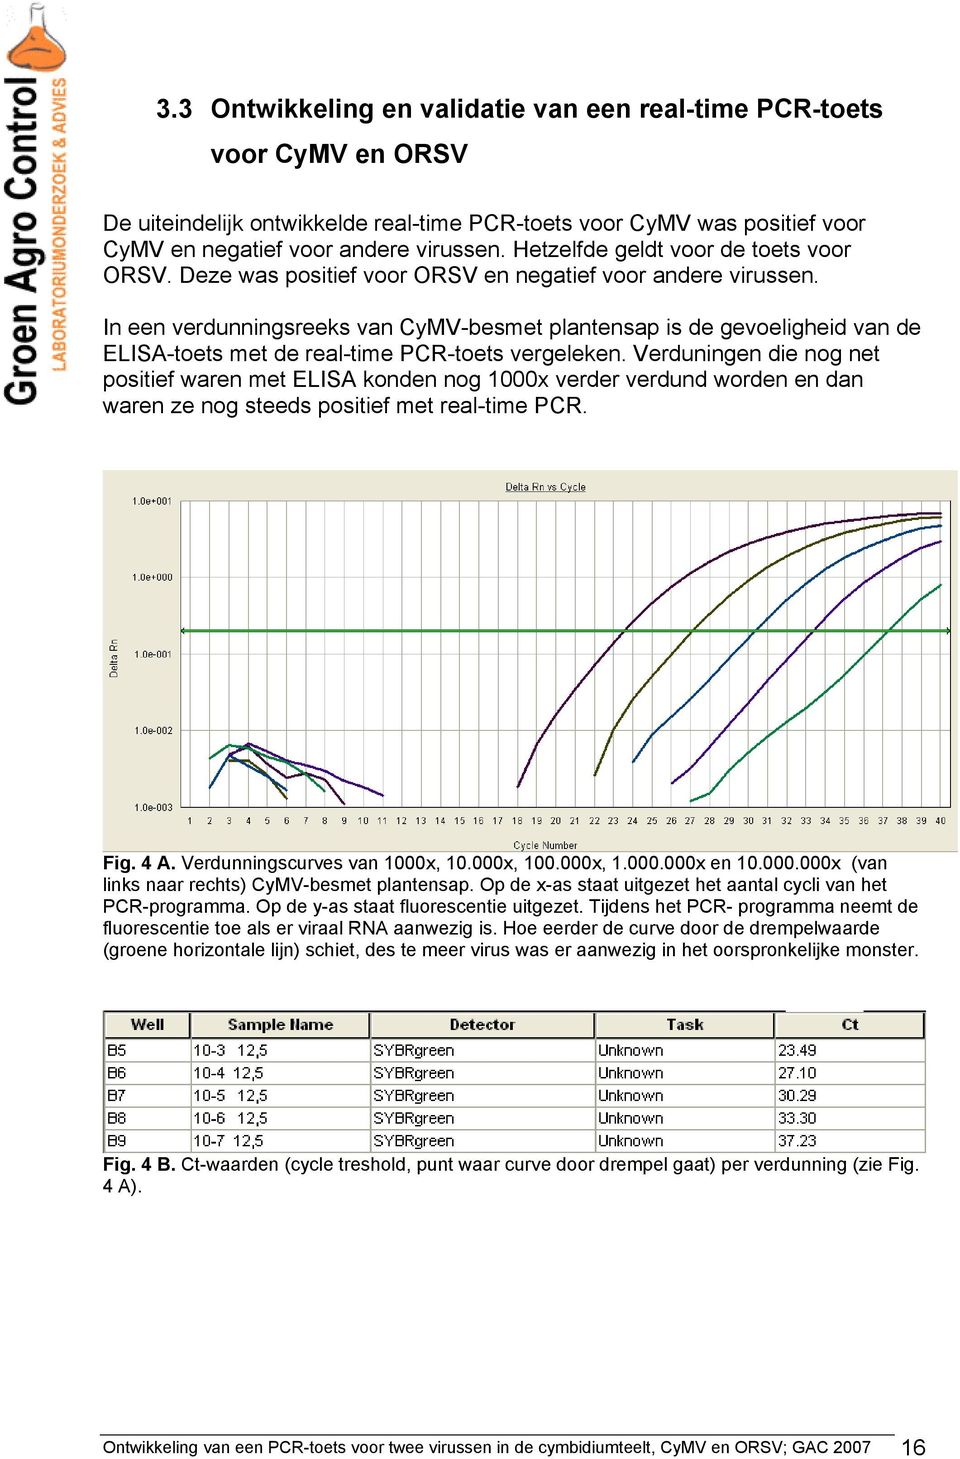 In een verdunningsreeks van CyMV-besmet plantensap is de gevoeligheid van de ELISA-toets met de real-time PCR-toets vergeleken.